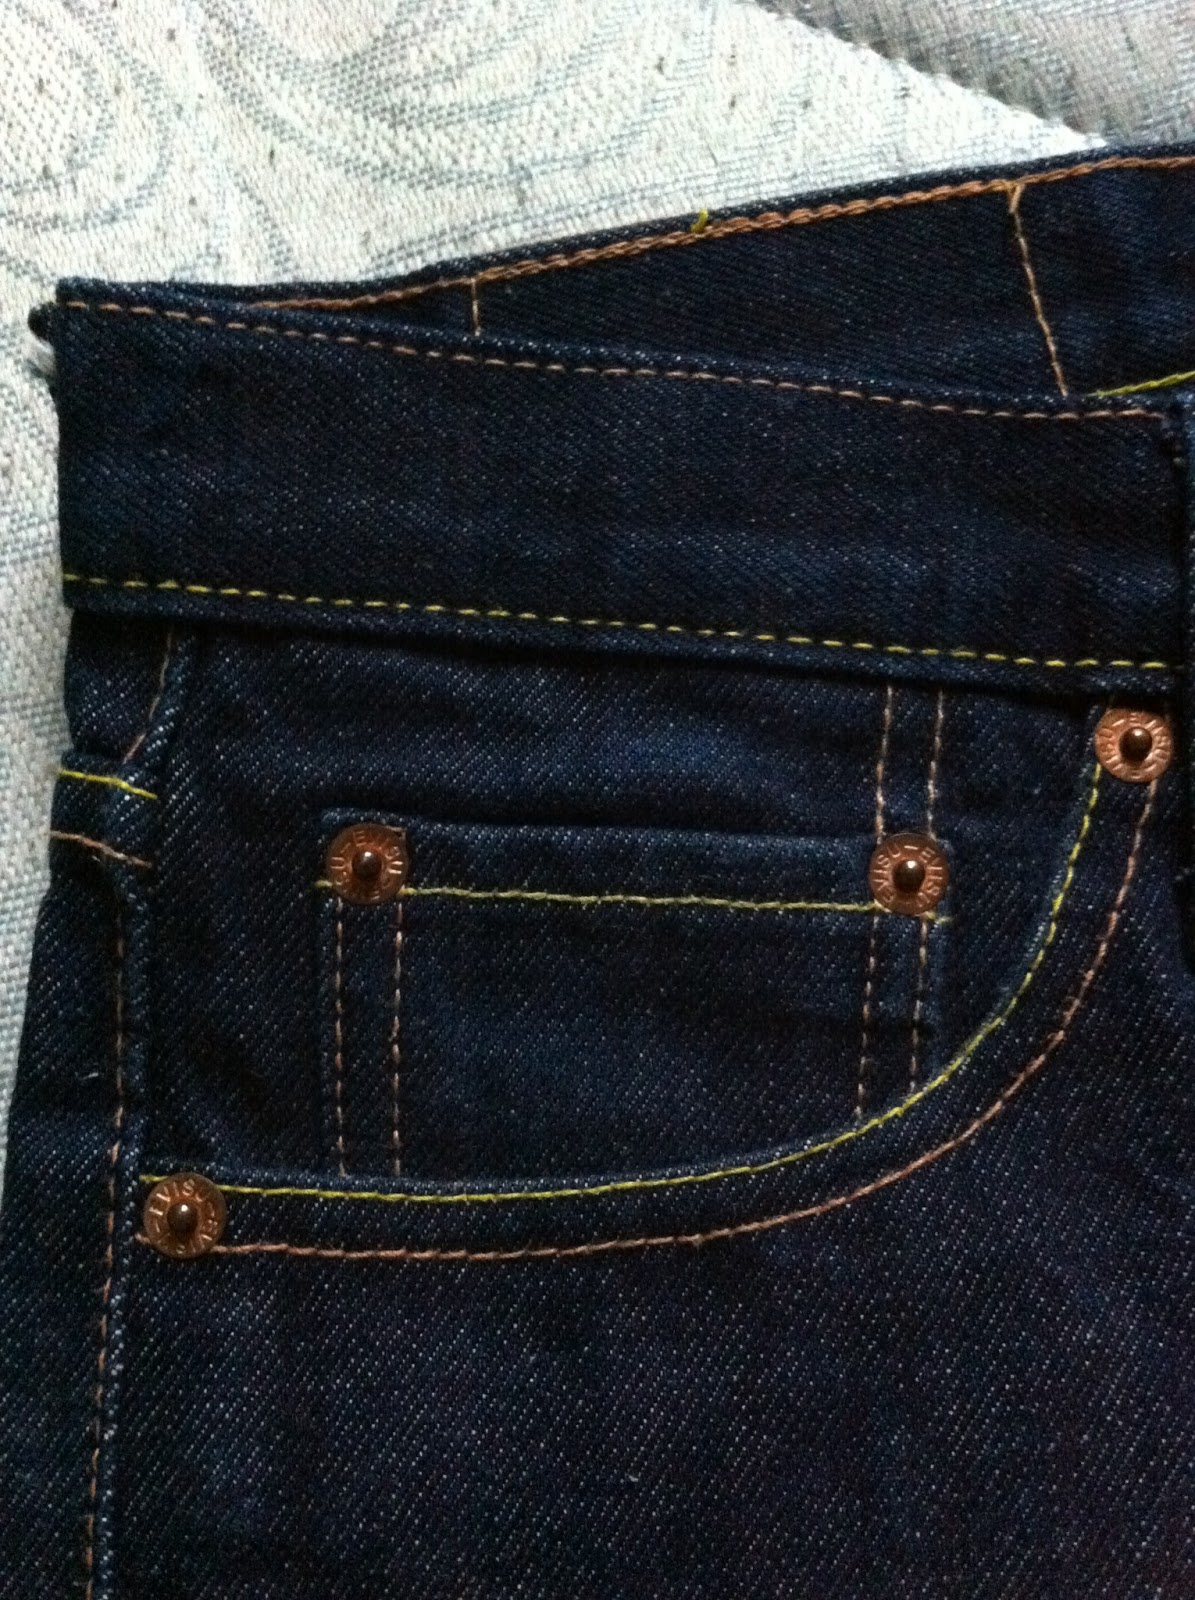 Azim Wigan(UK) Bundle..: RARE EVISU JEANS - SIZE 30 - seluar jeans ...